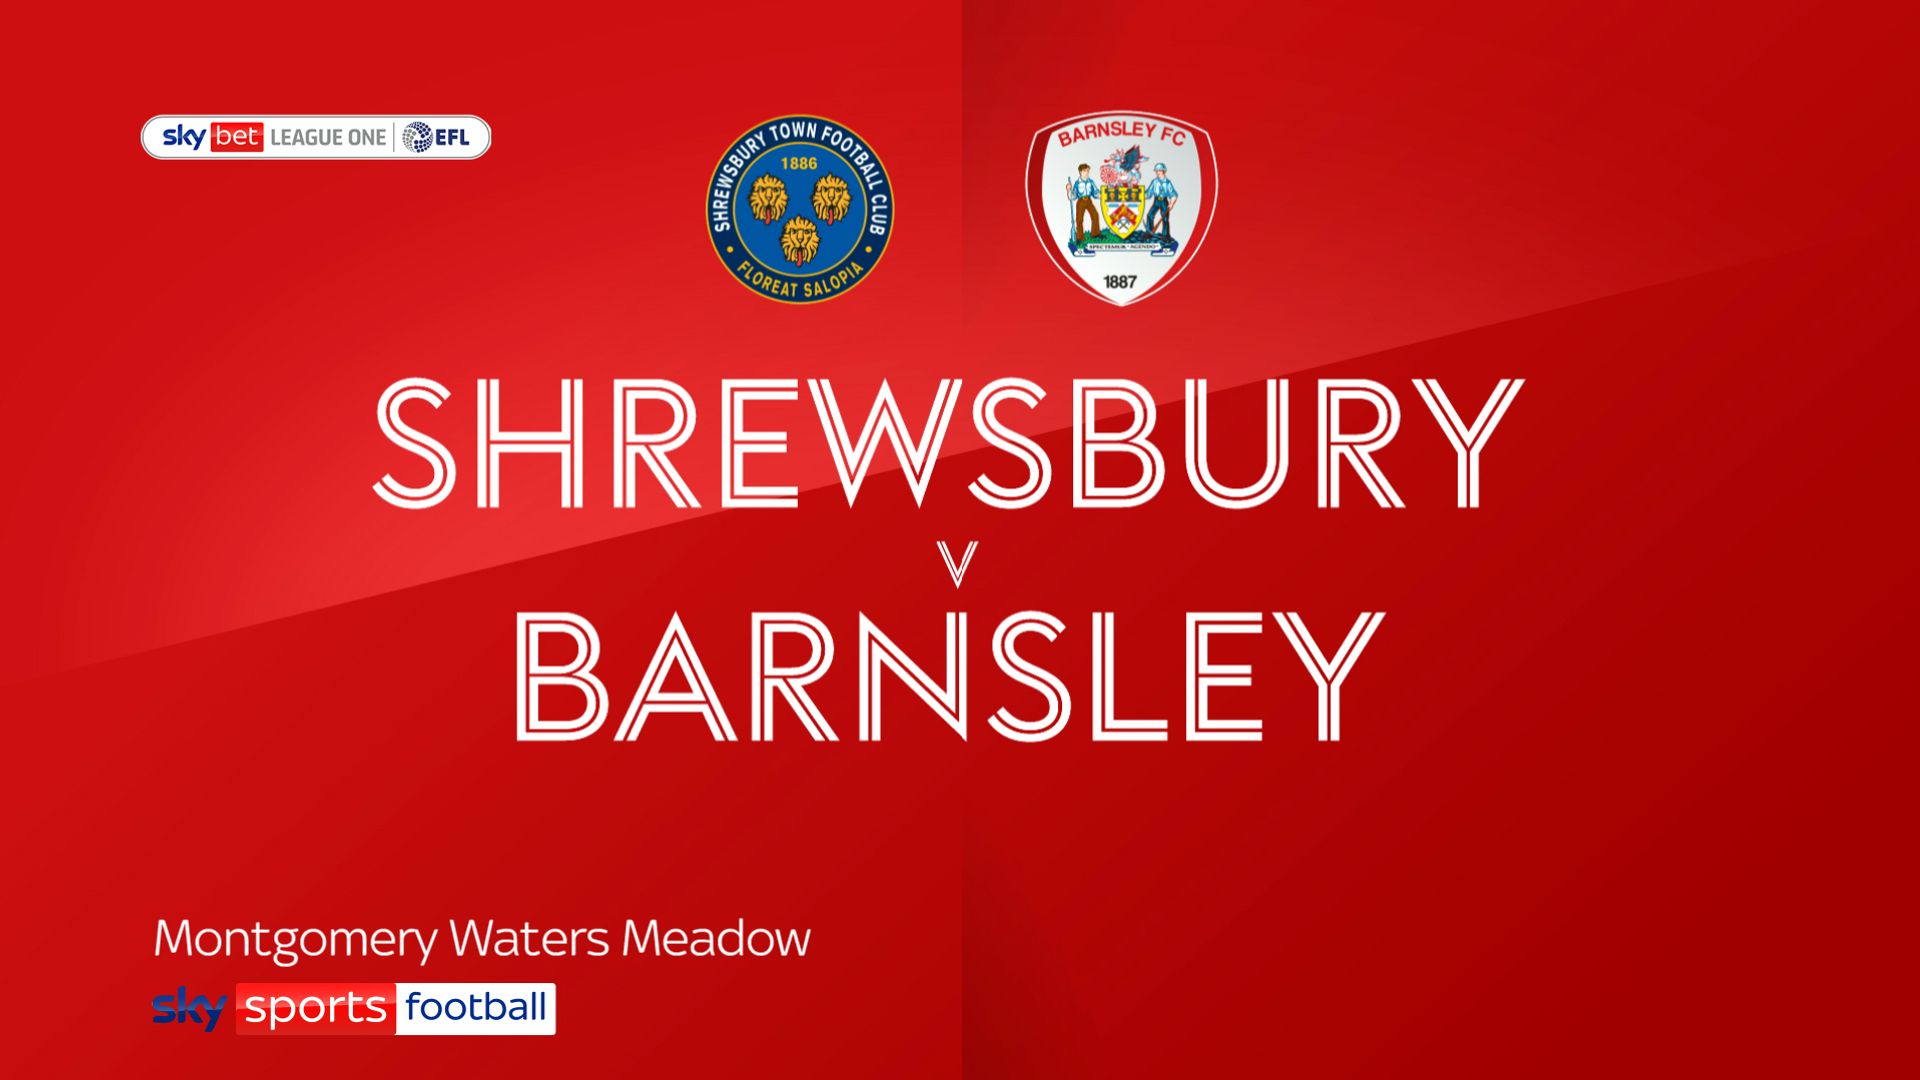 Barnsley add third consecutive win at ShrewsburySkySports | Information